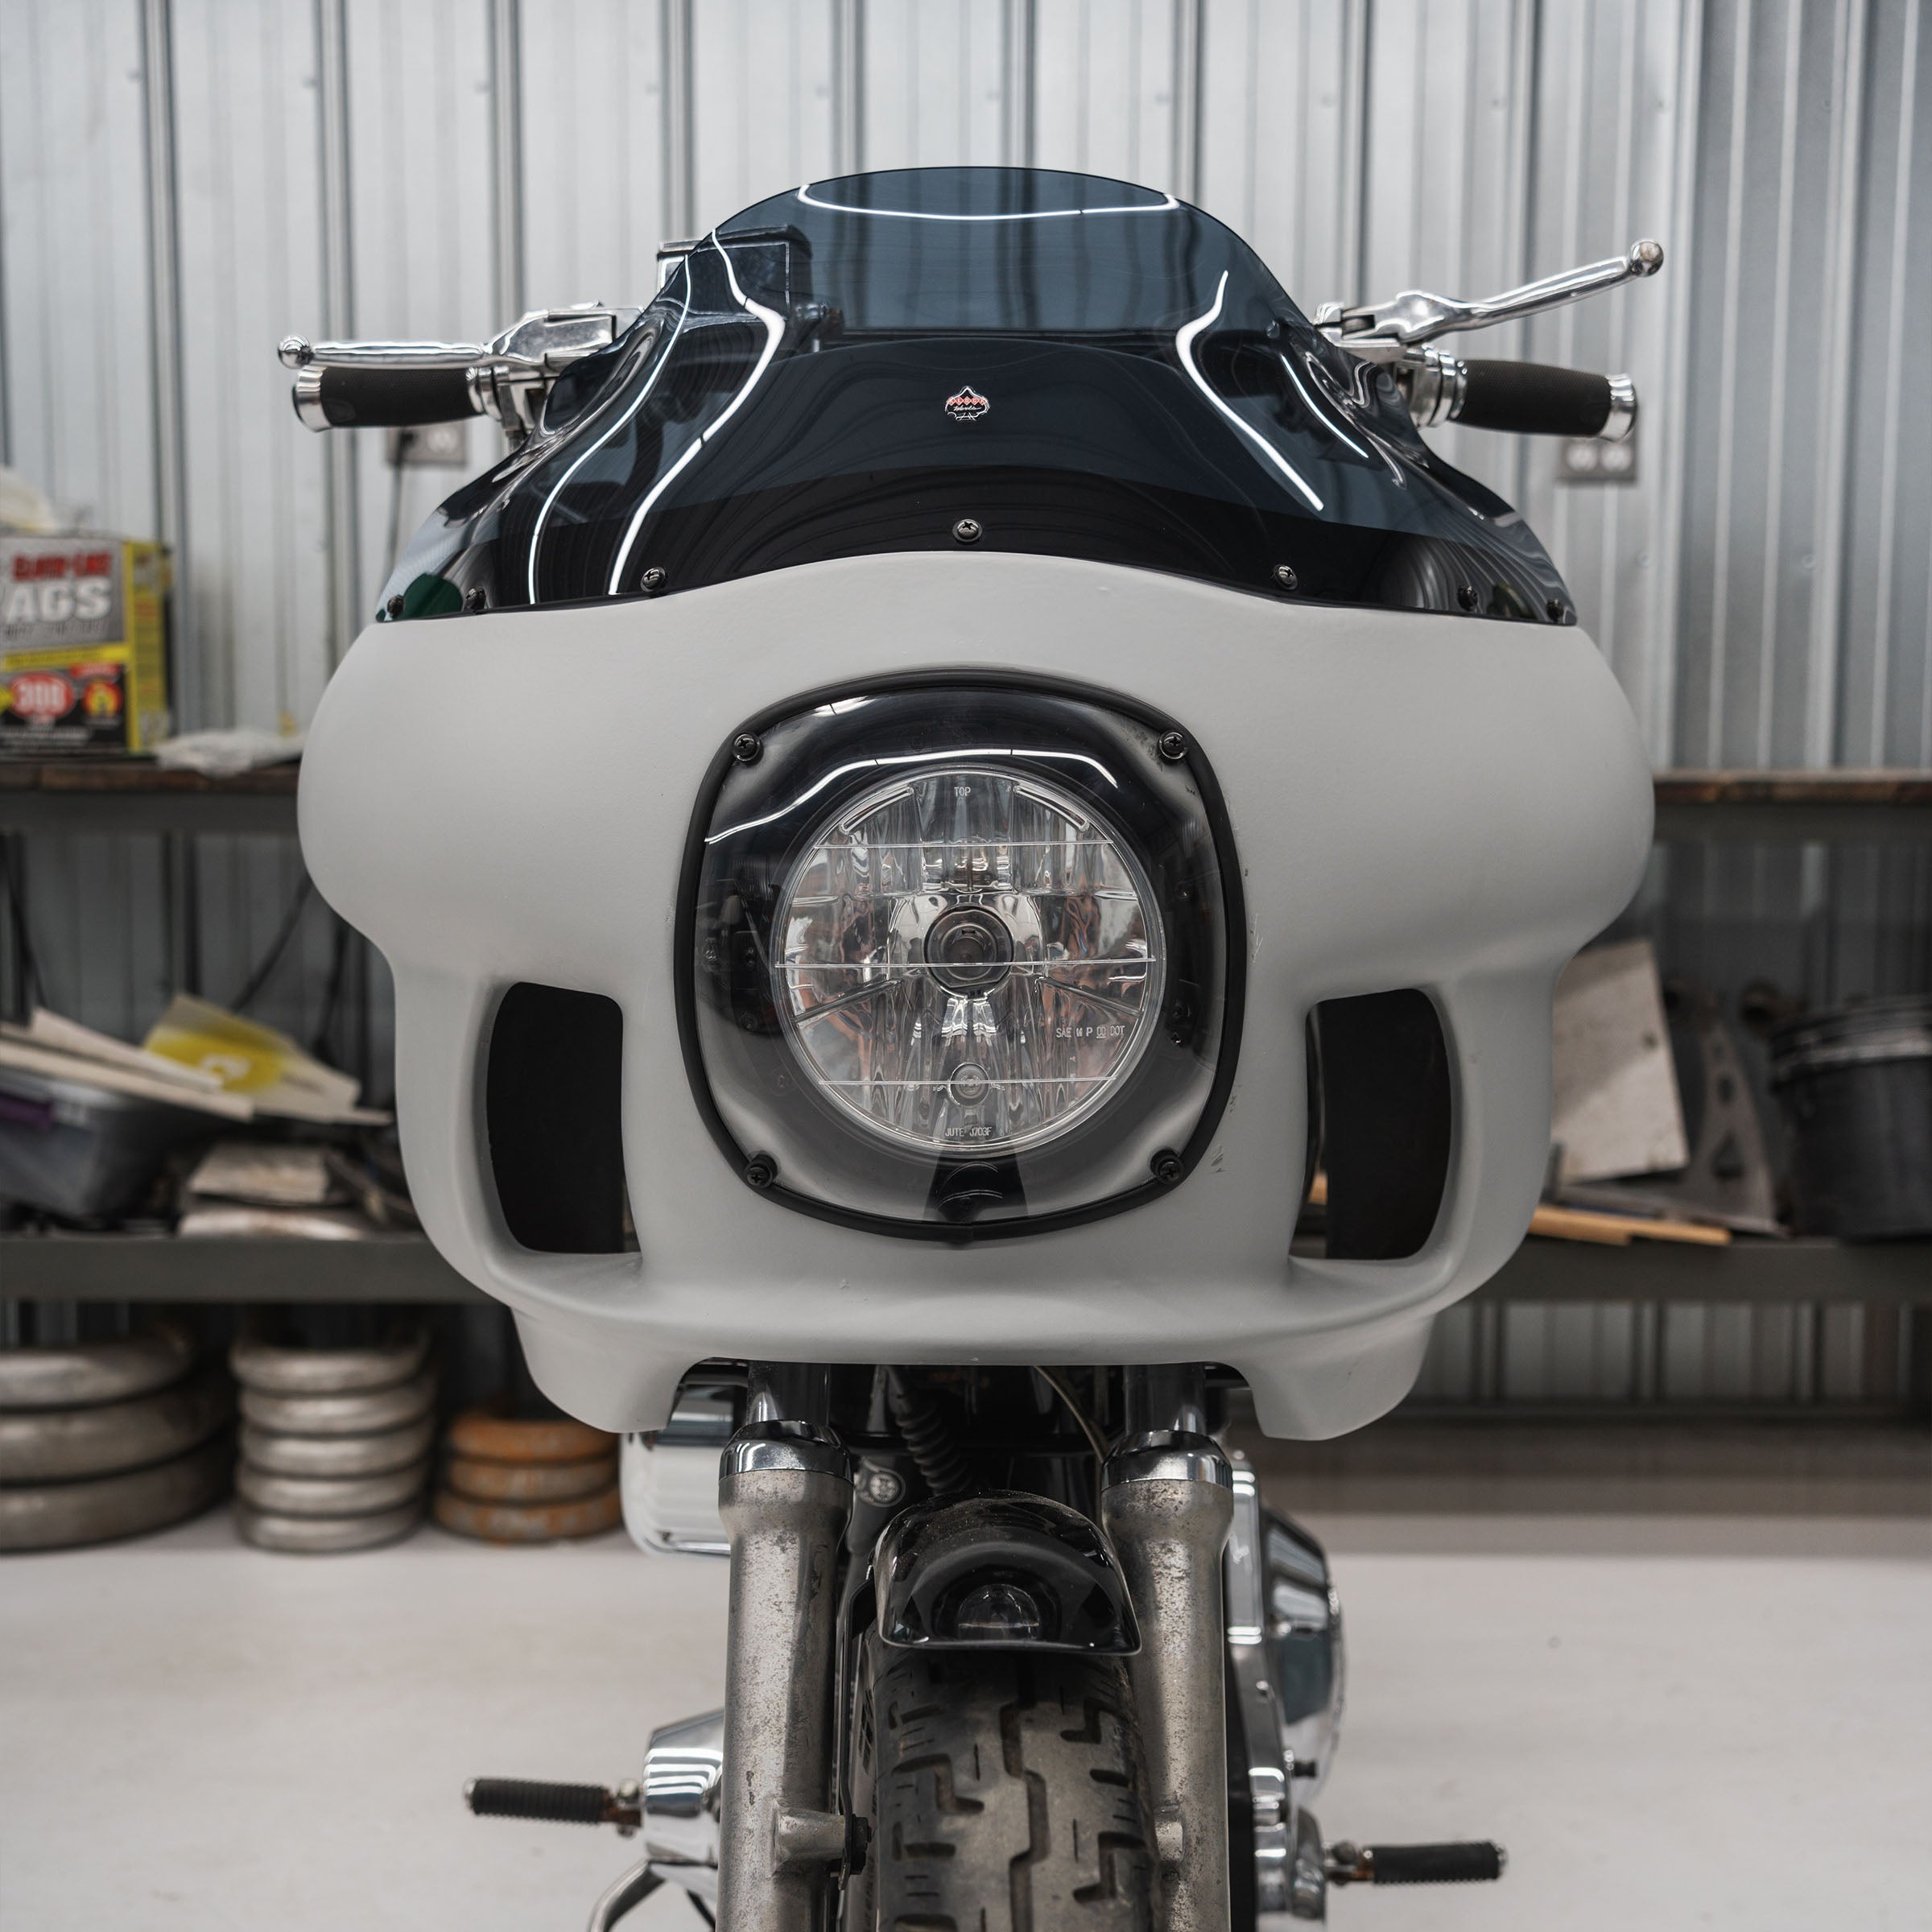 Harley-Davidson FXRP Fairing Fit Kit for FXR Motorcycles (H-D FXR)